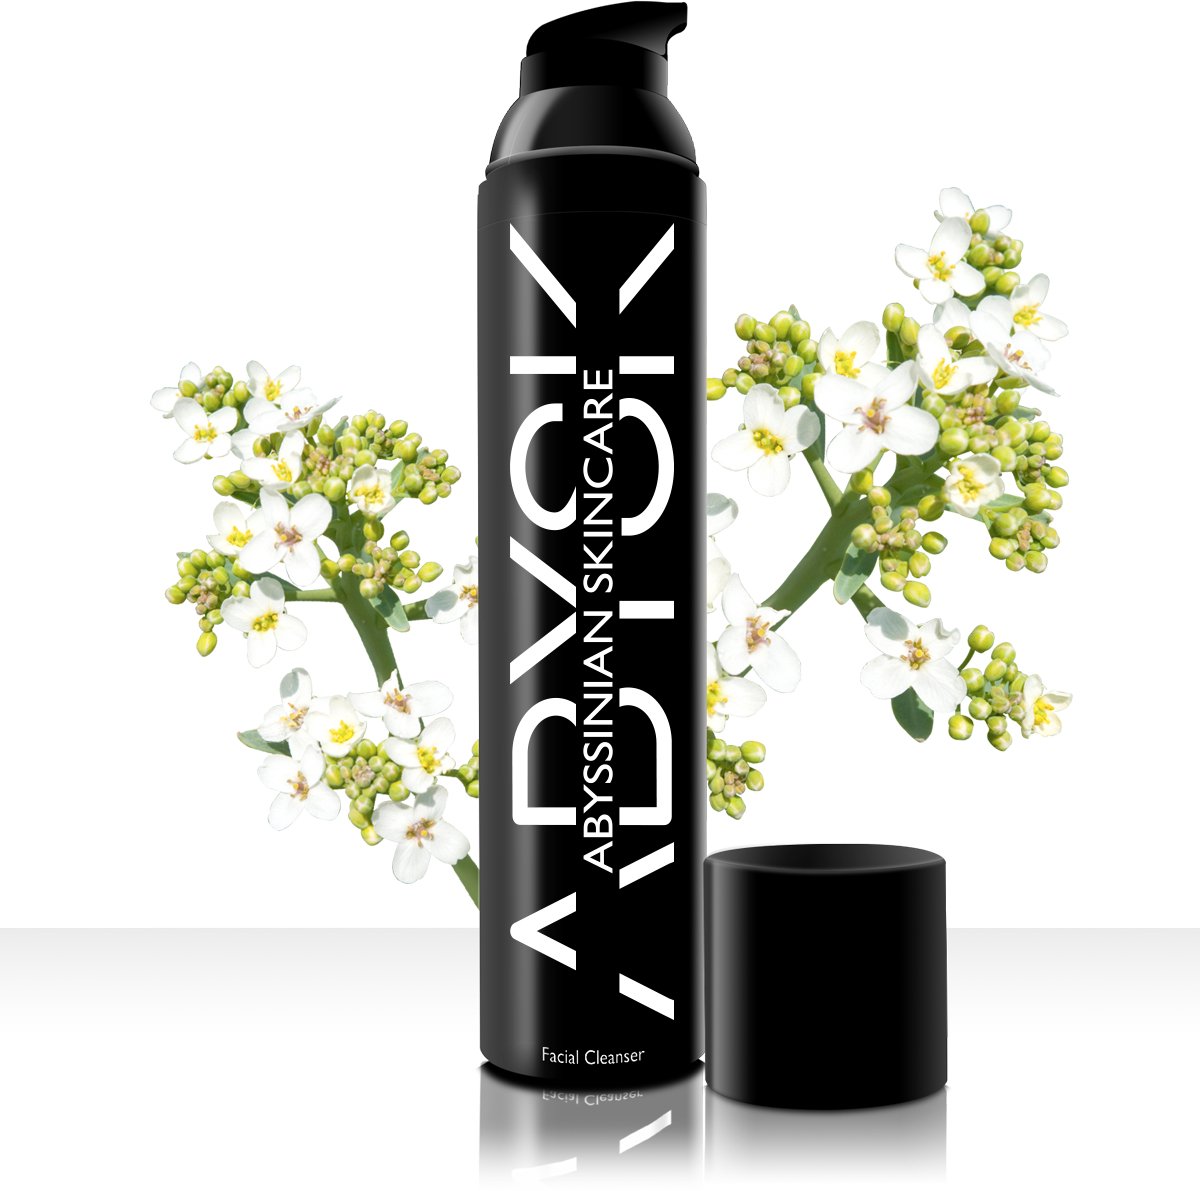 Abysk - Facial Cleanser - 100 ml - natuurlijke huidverzorging - gezichtsreiniger - milde reiniger - parfumvrij - alcoholvrij - parabenenvrij - watervrij